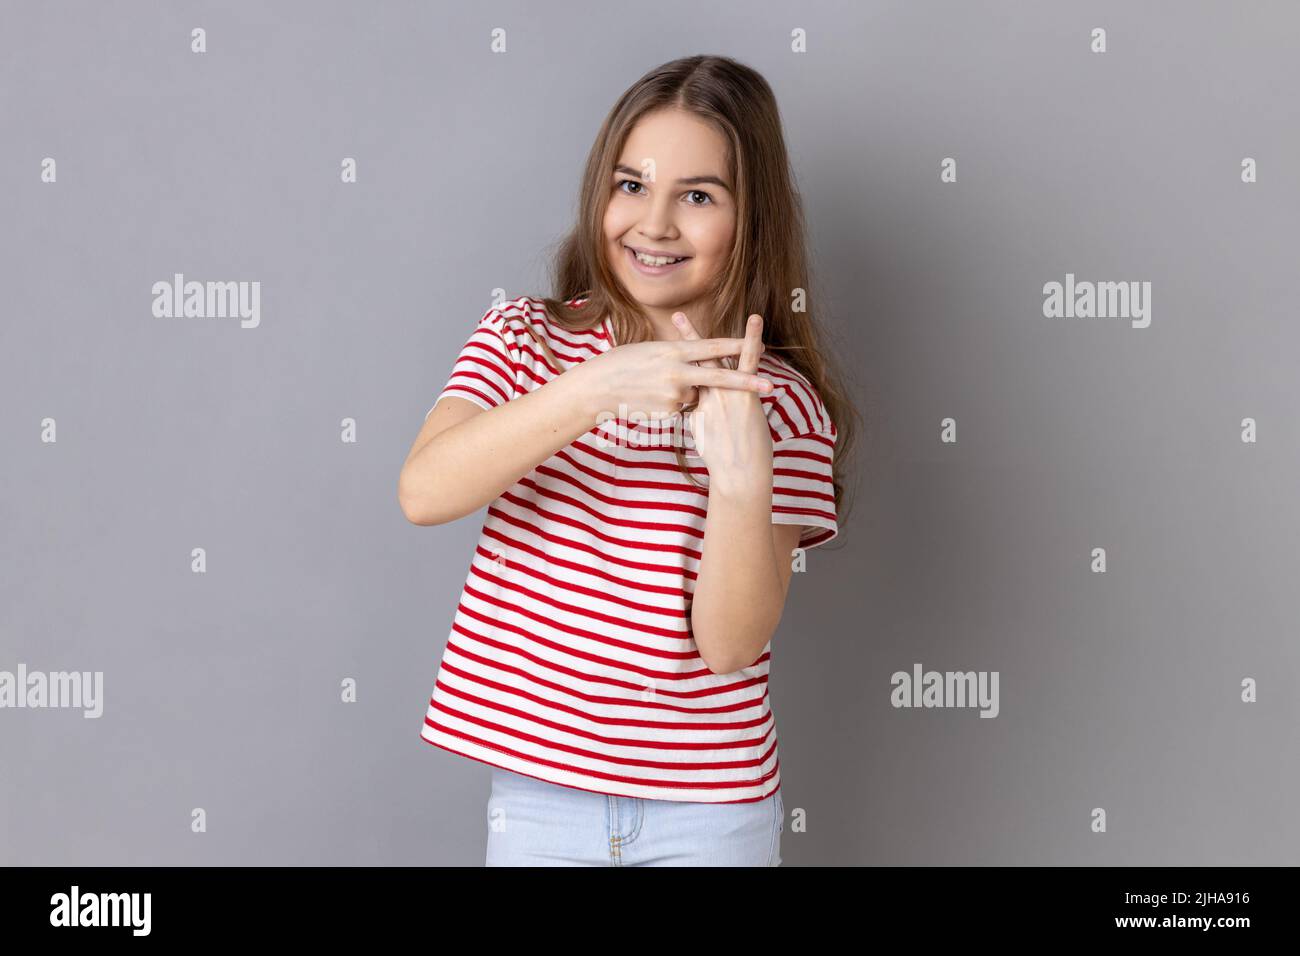 Tendencias de Internet. Retrato de niña que llevaba camiseta a rayas cruzando los dedos para hacer hashtag signo y mirar la cámara con una sonrisa tootea. Estudio de interior grabado aislado sobre fondo gris. Foto de stock